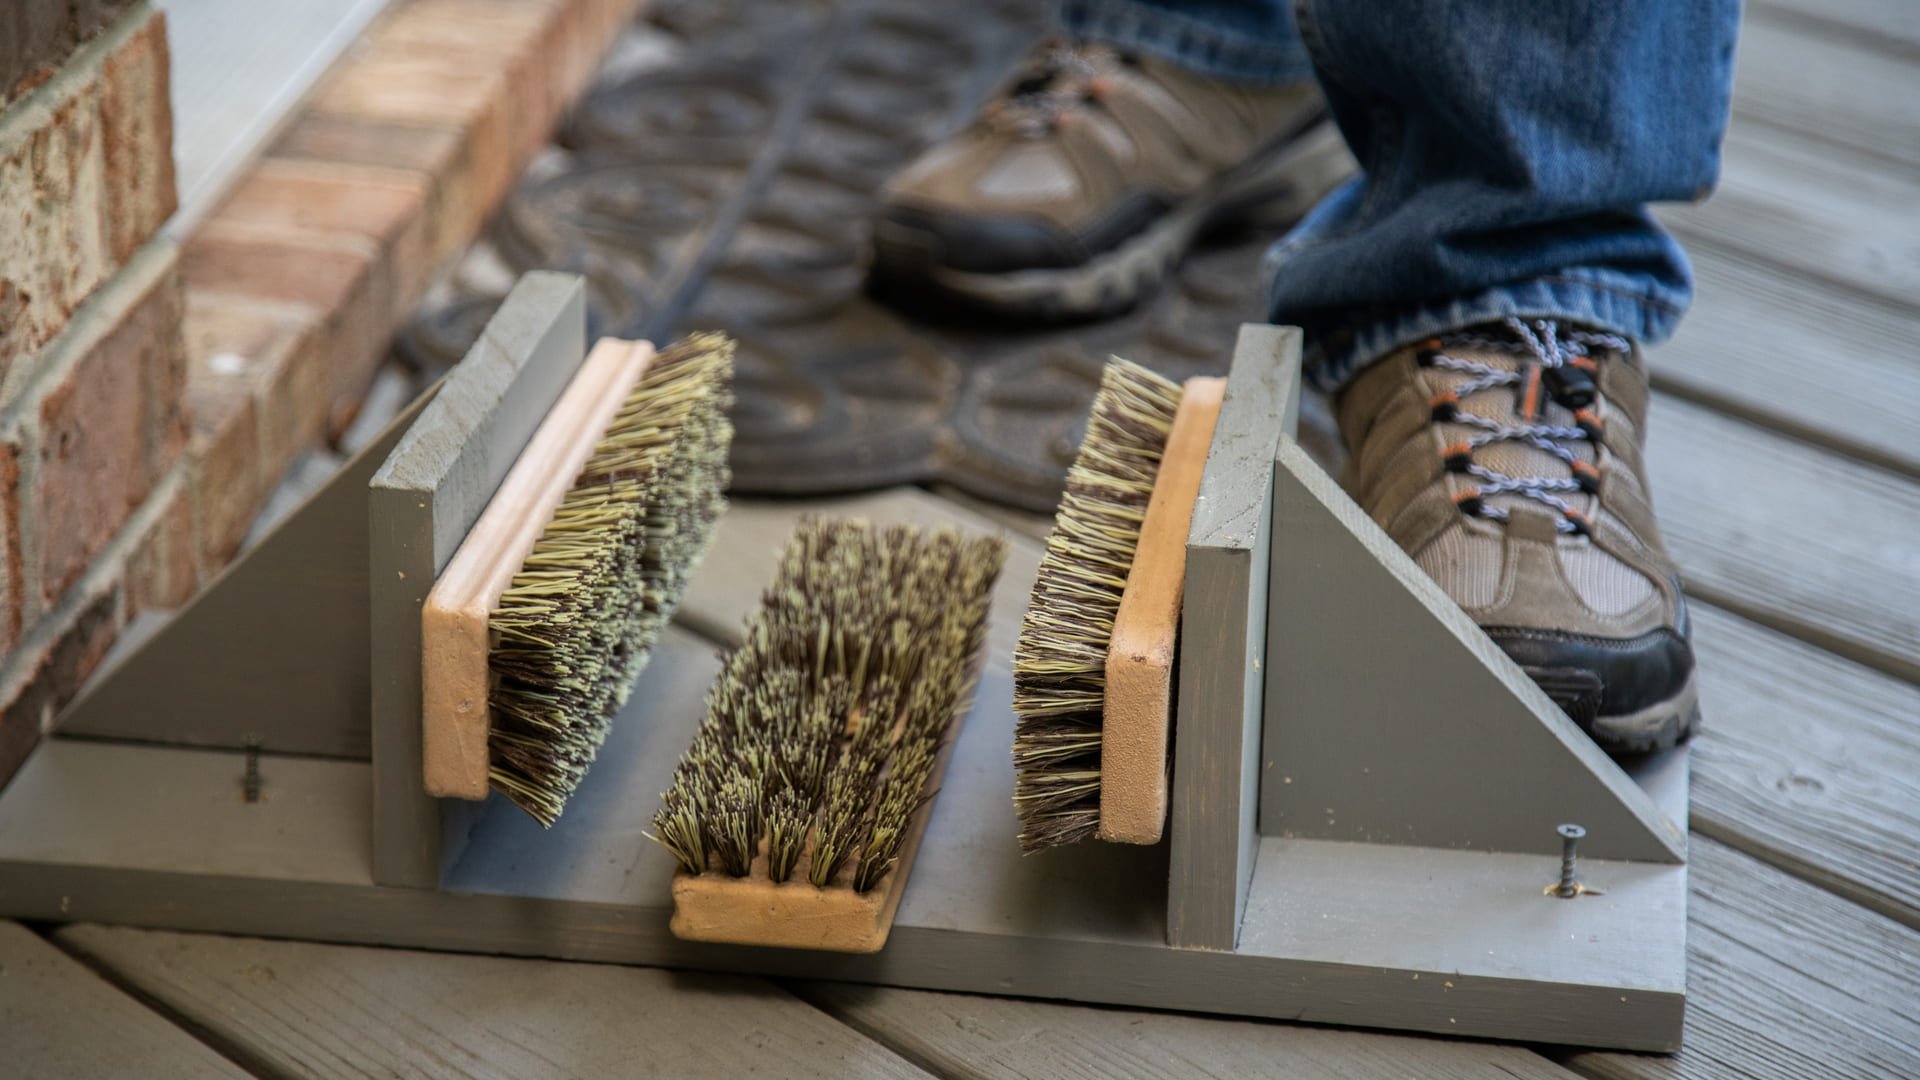 Metal Boot Scraper Brush Outdoor Door Mat Floor Shoe Mud Cleaner